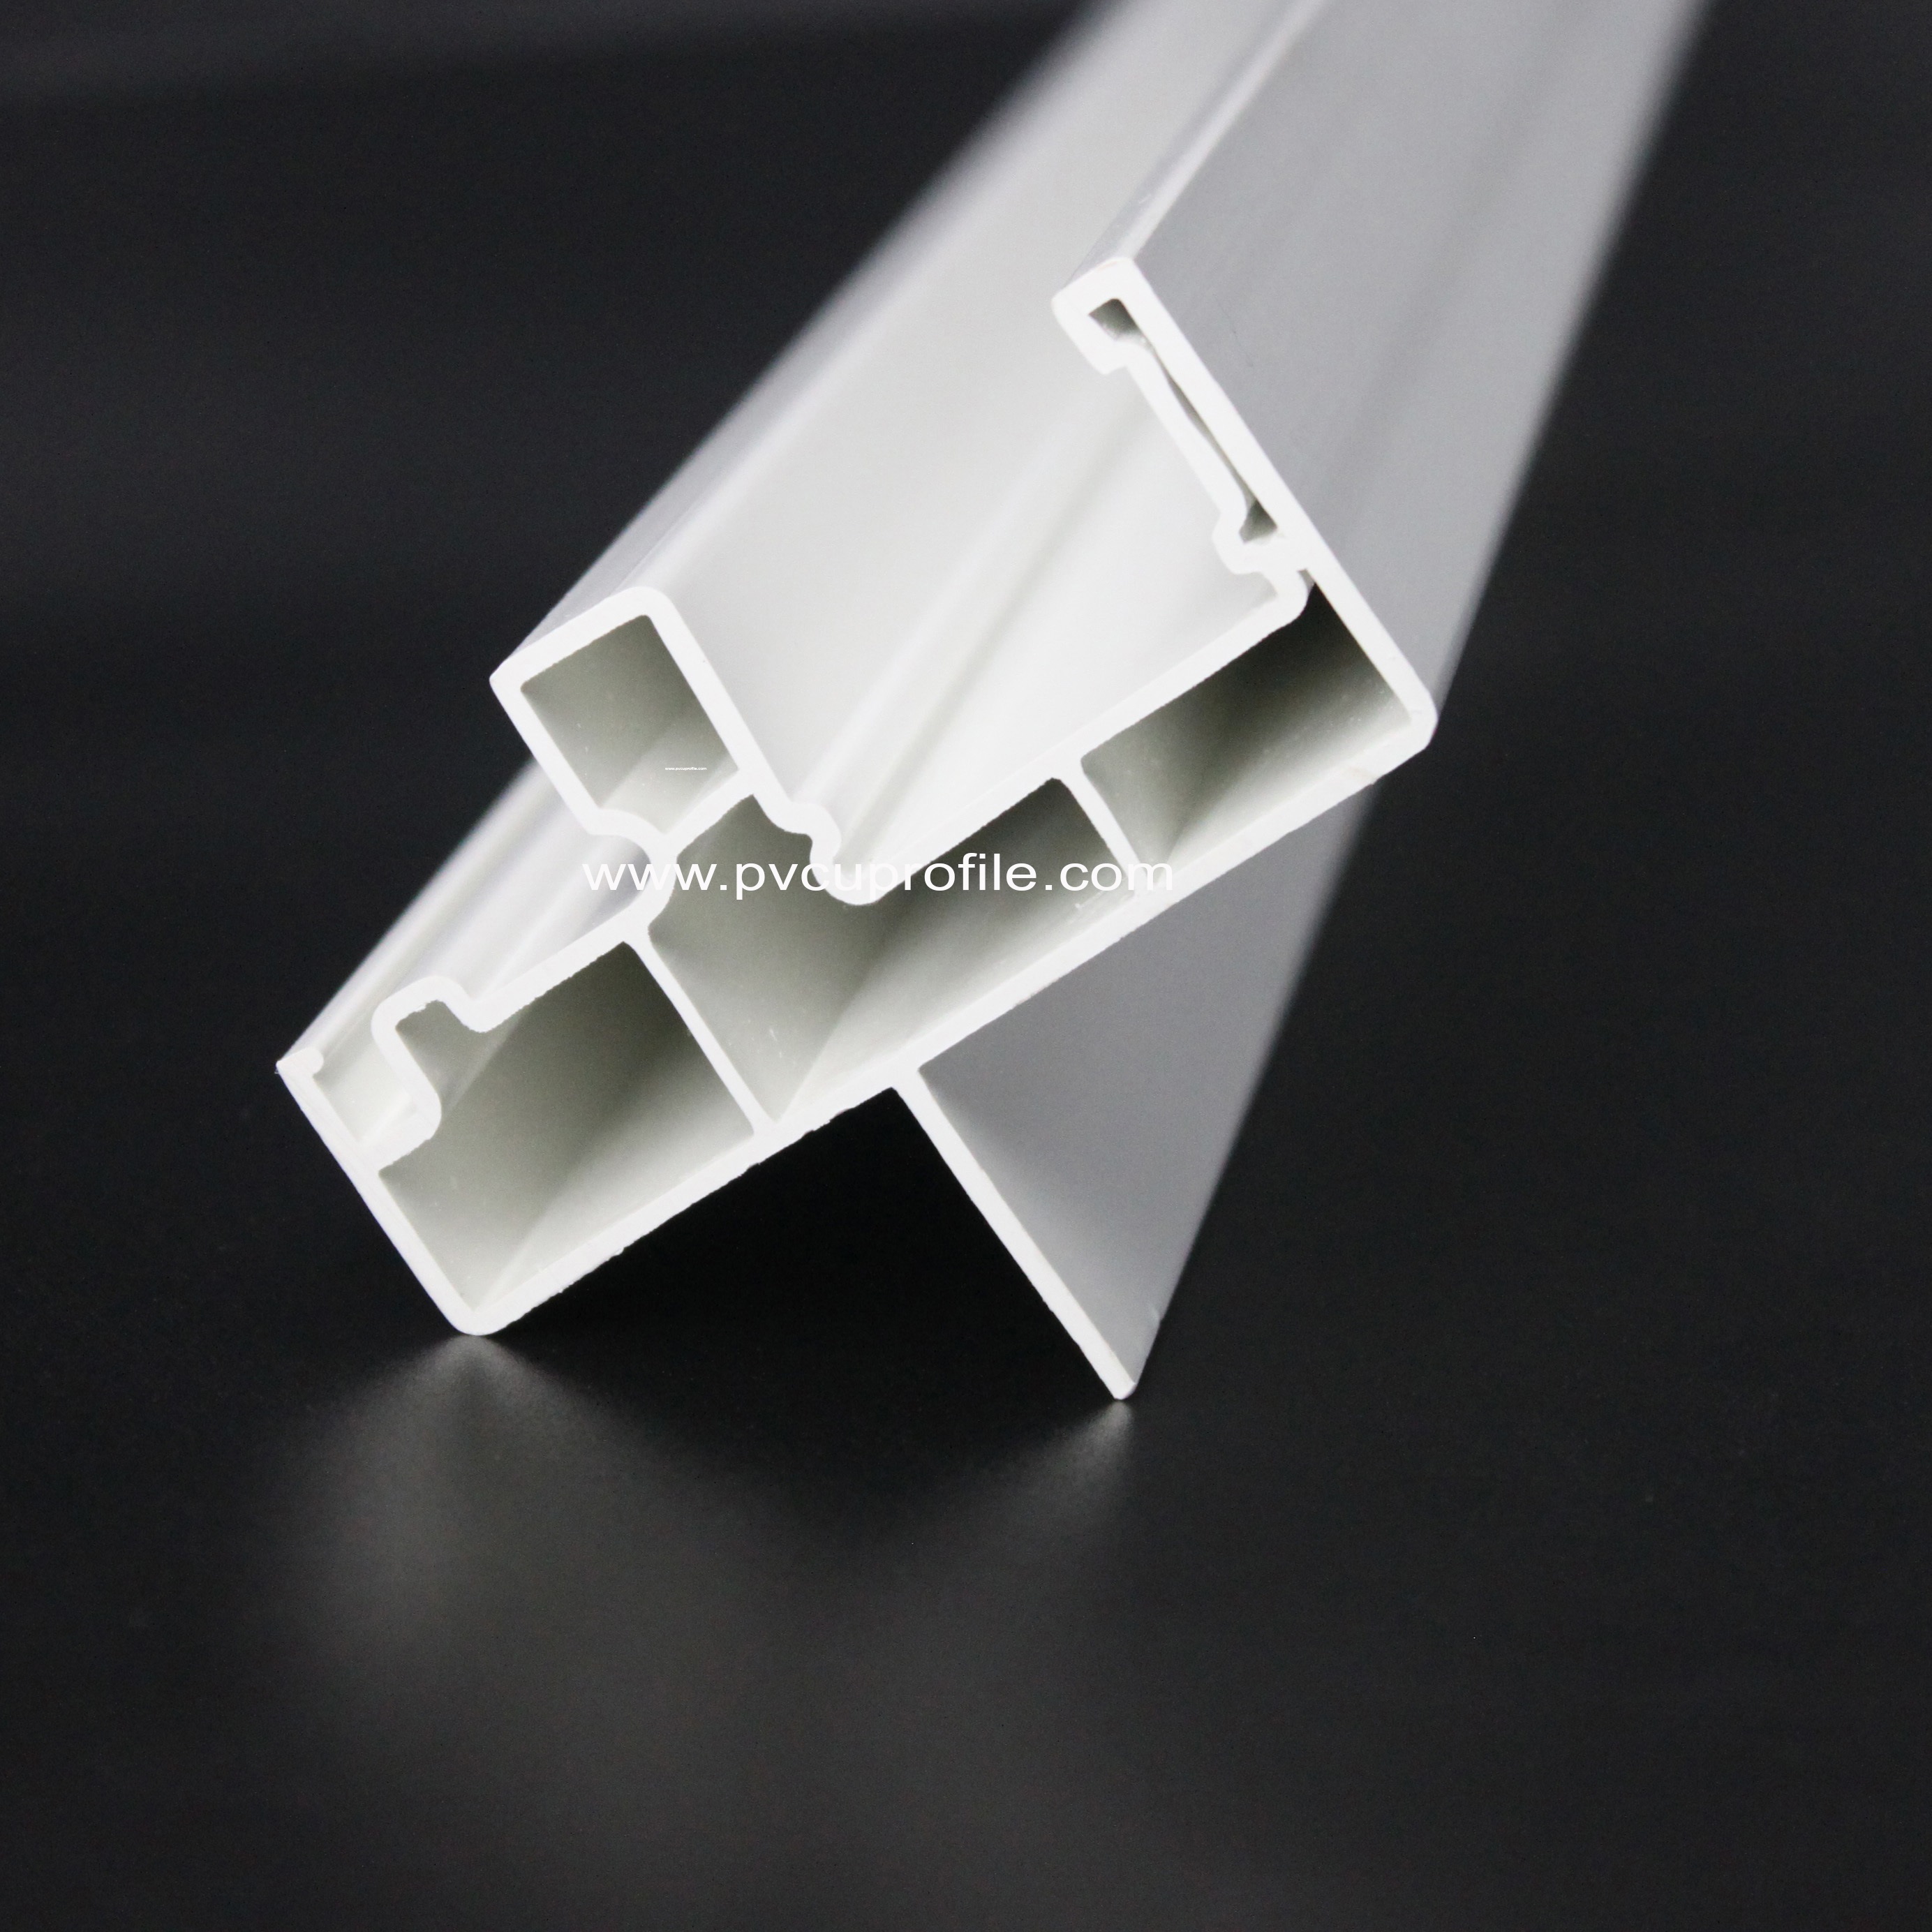 Sistema de ventana de PVC Estilo estadounidense UPVC/PVC PRASCLE DE PLASCO